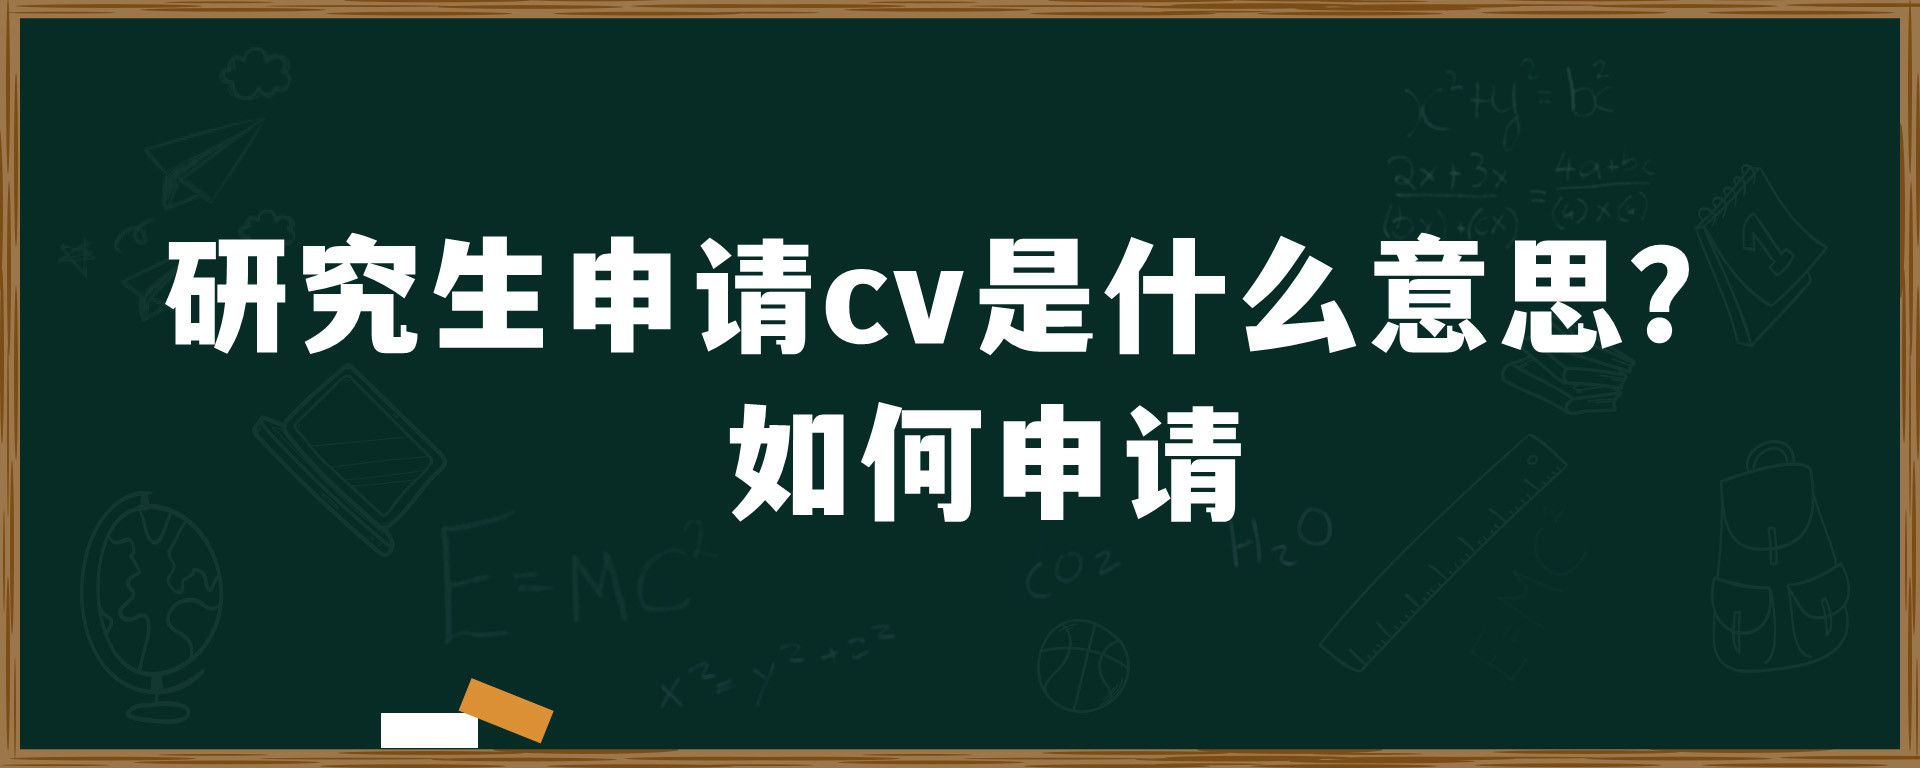 研究生申请cv是什么意思？如何申请